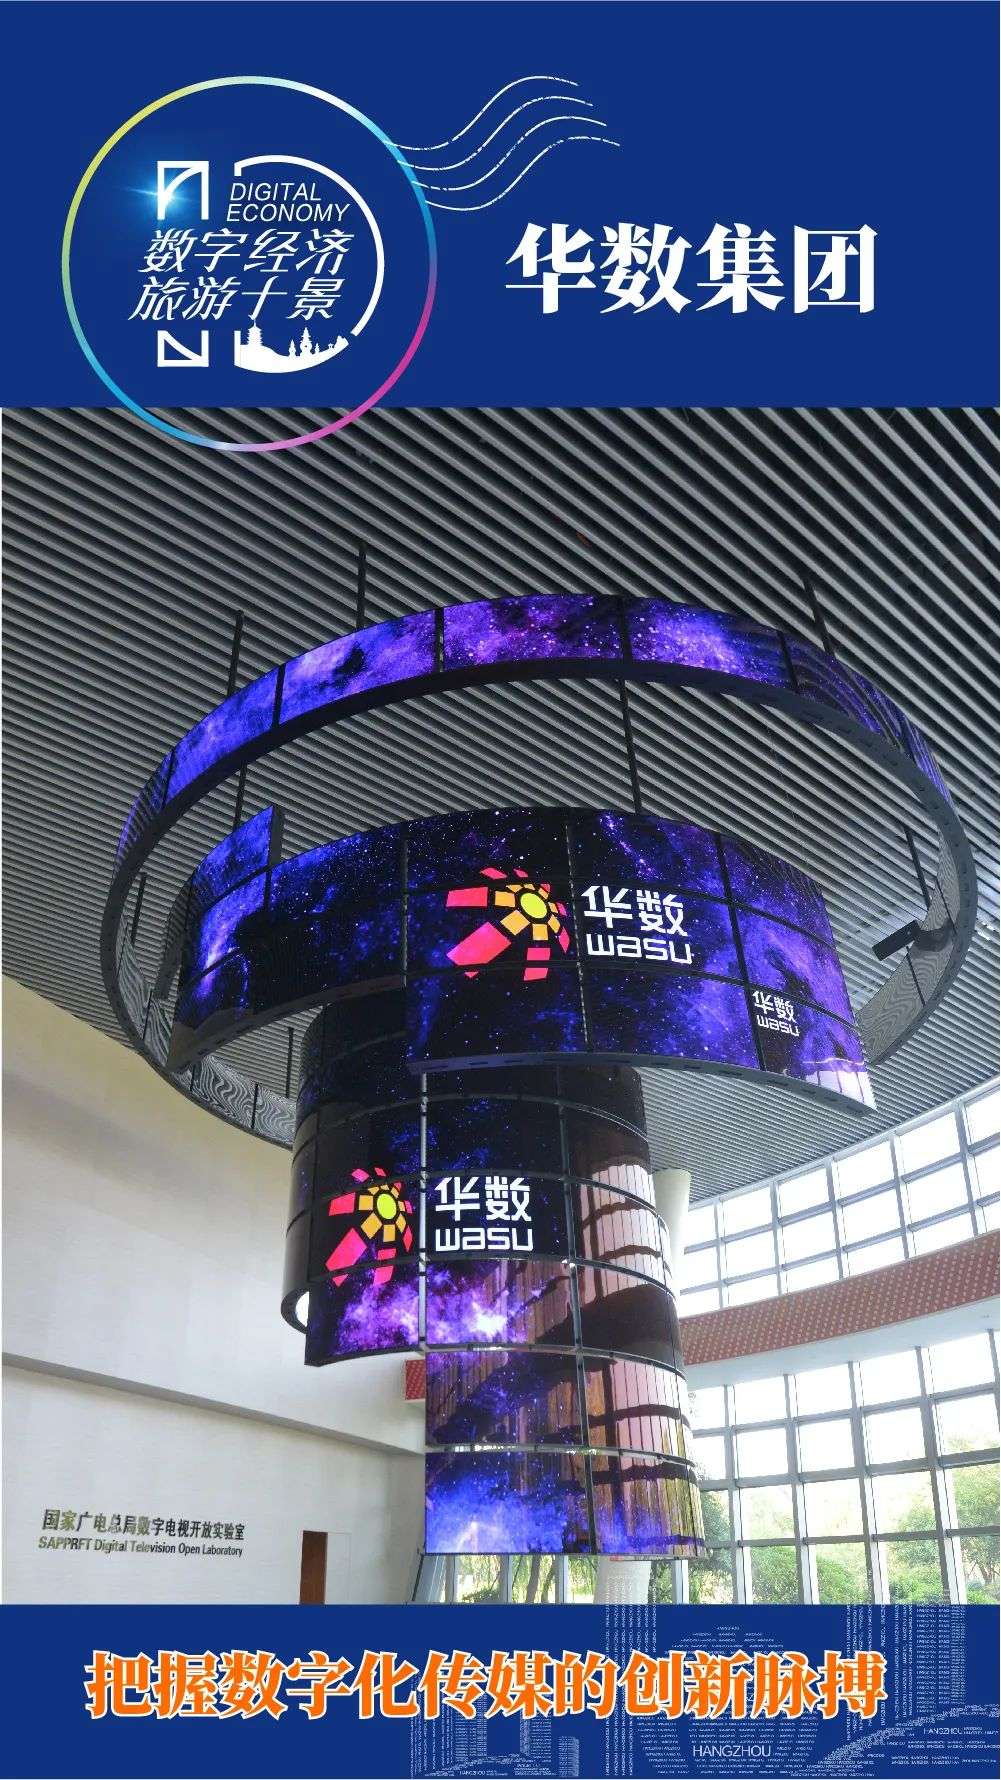 文化旅游+数字经济，杭州在全国首创“数字经济旅游十景”